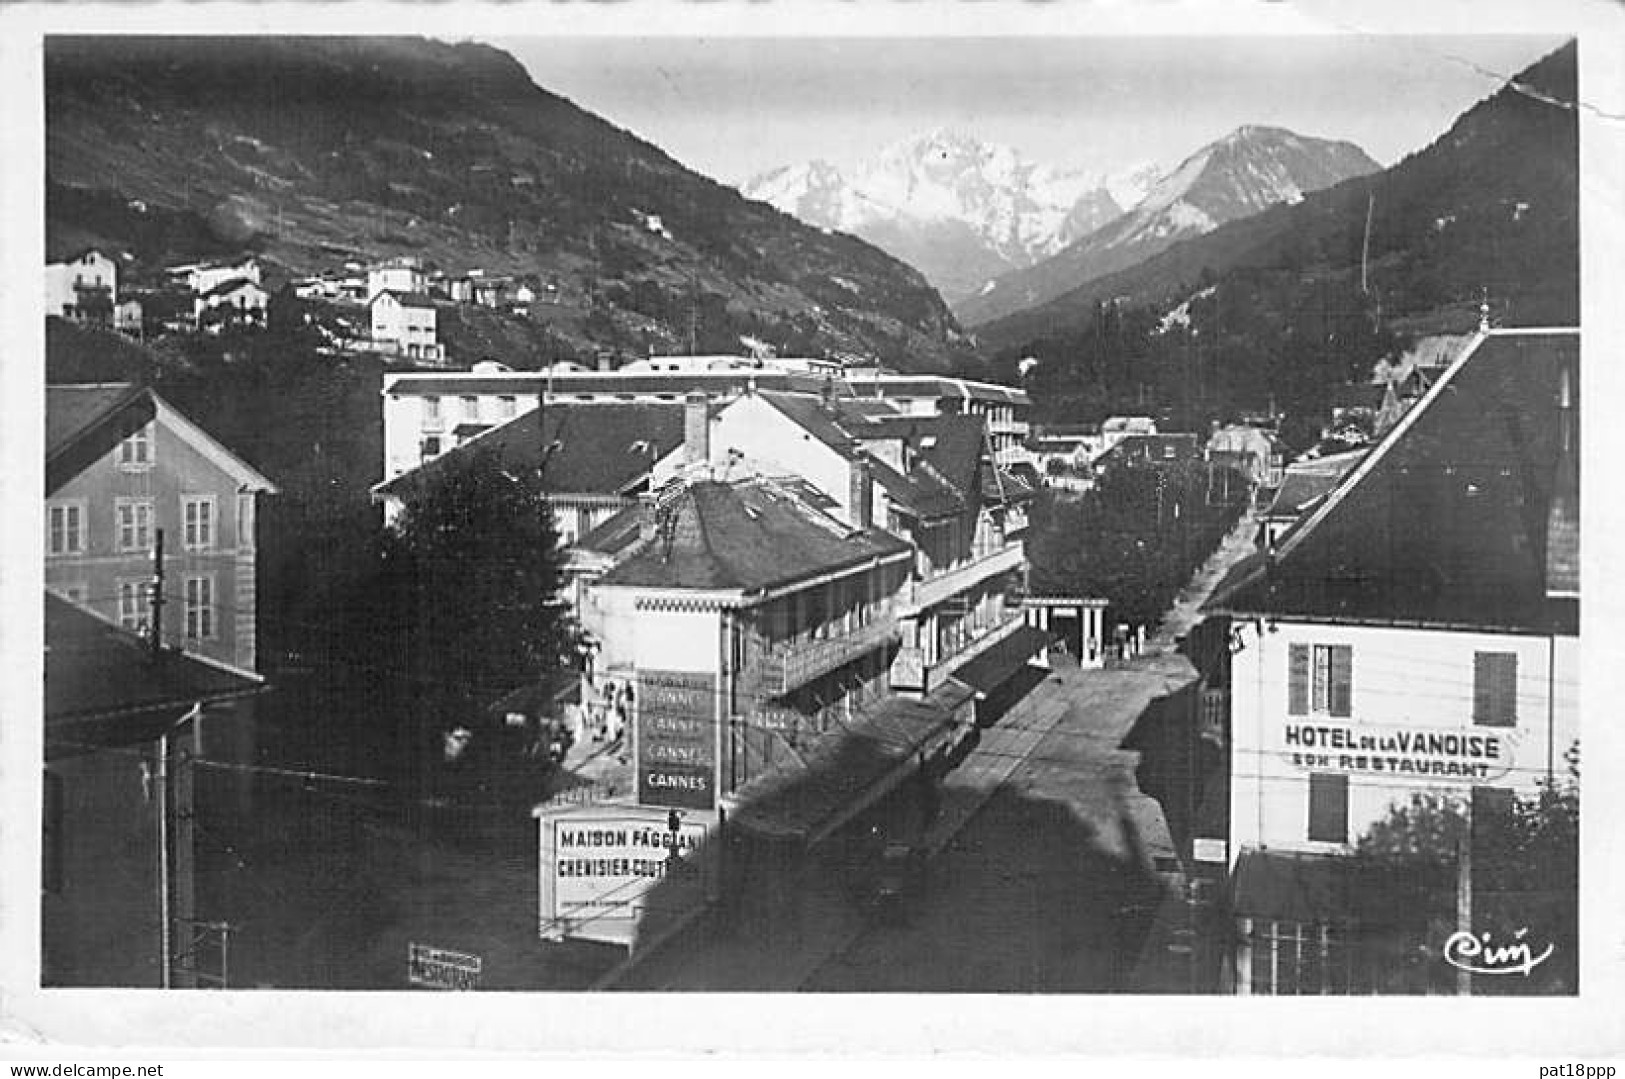 FRANCE - Lot de 20 CPSM photos noir et blanc format CPA années 1945-1960's en BON ETAT (Cf détails dans description)